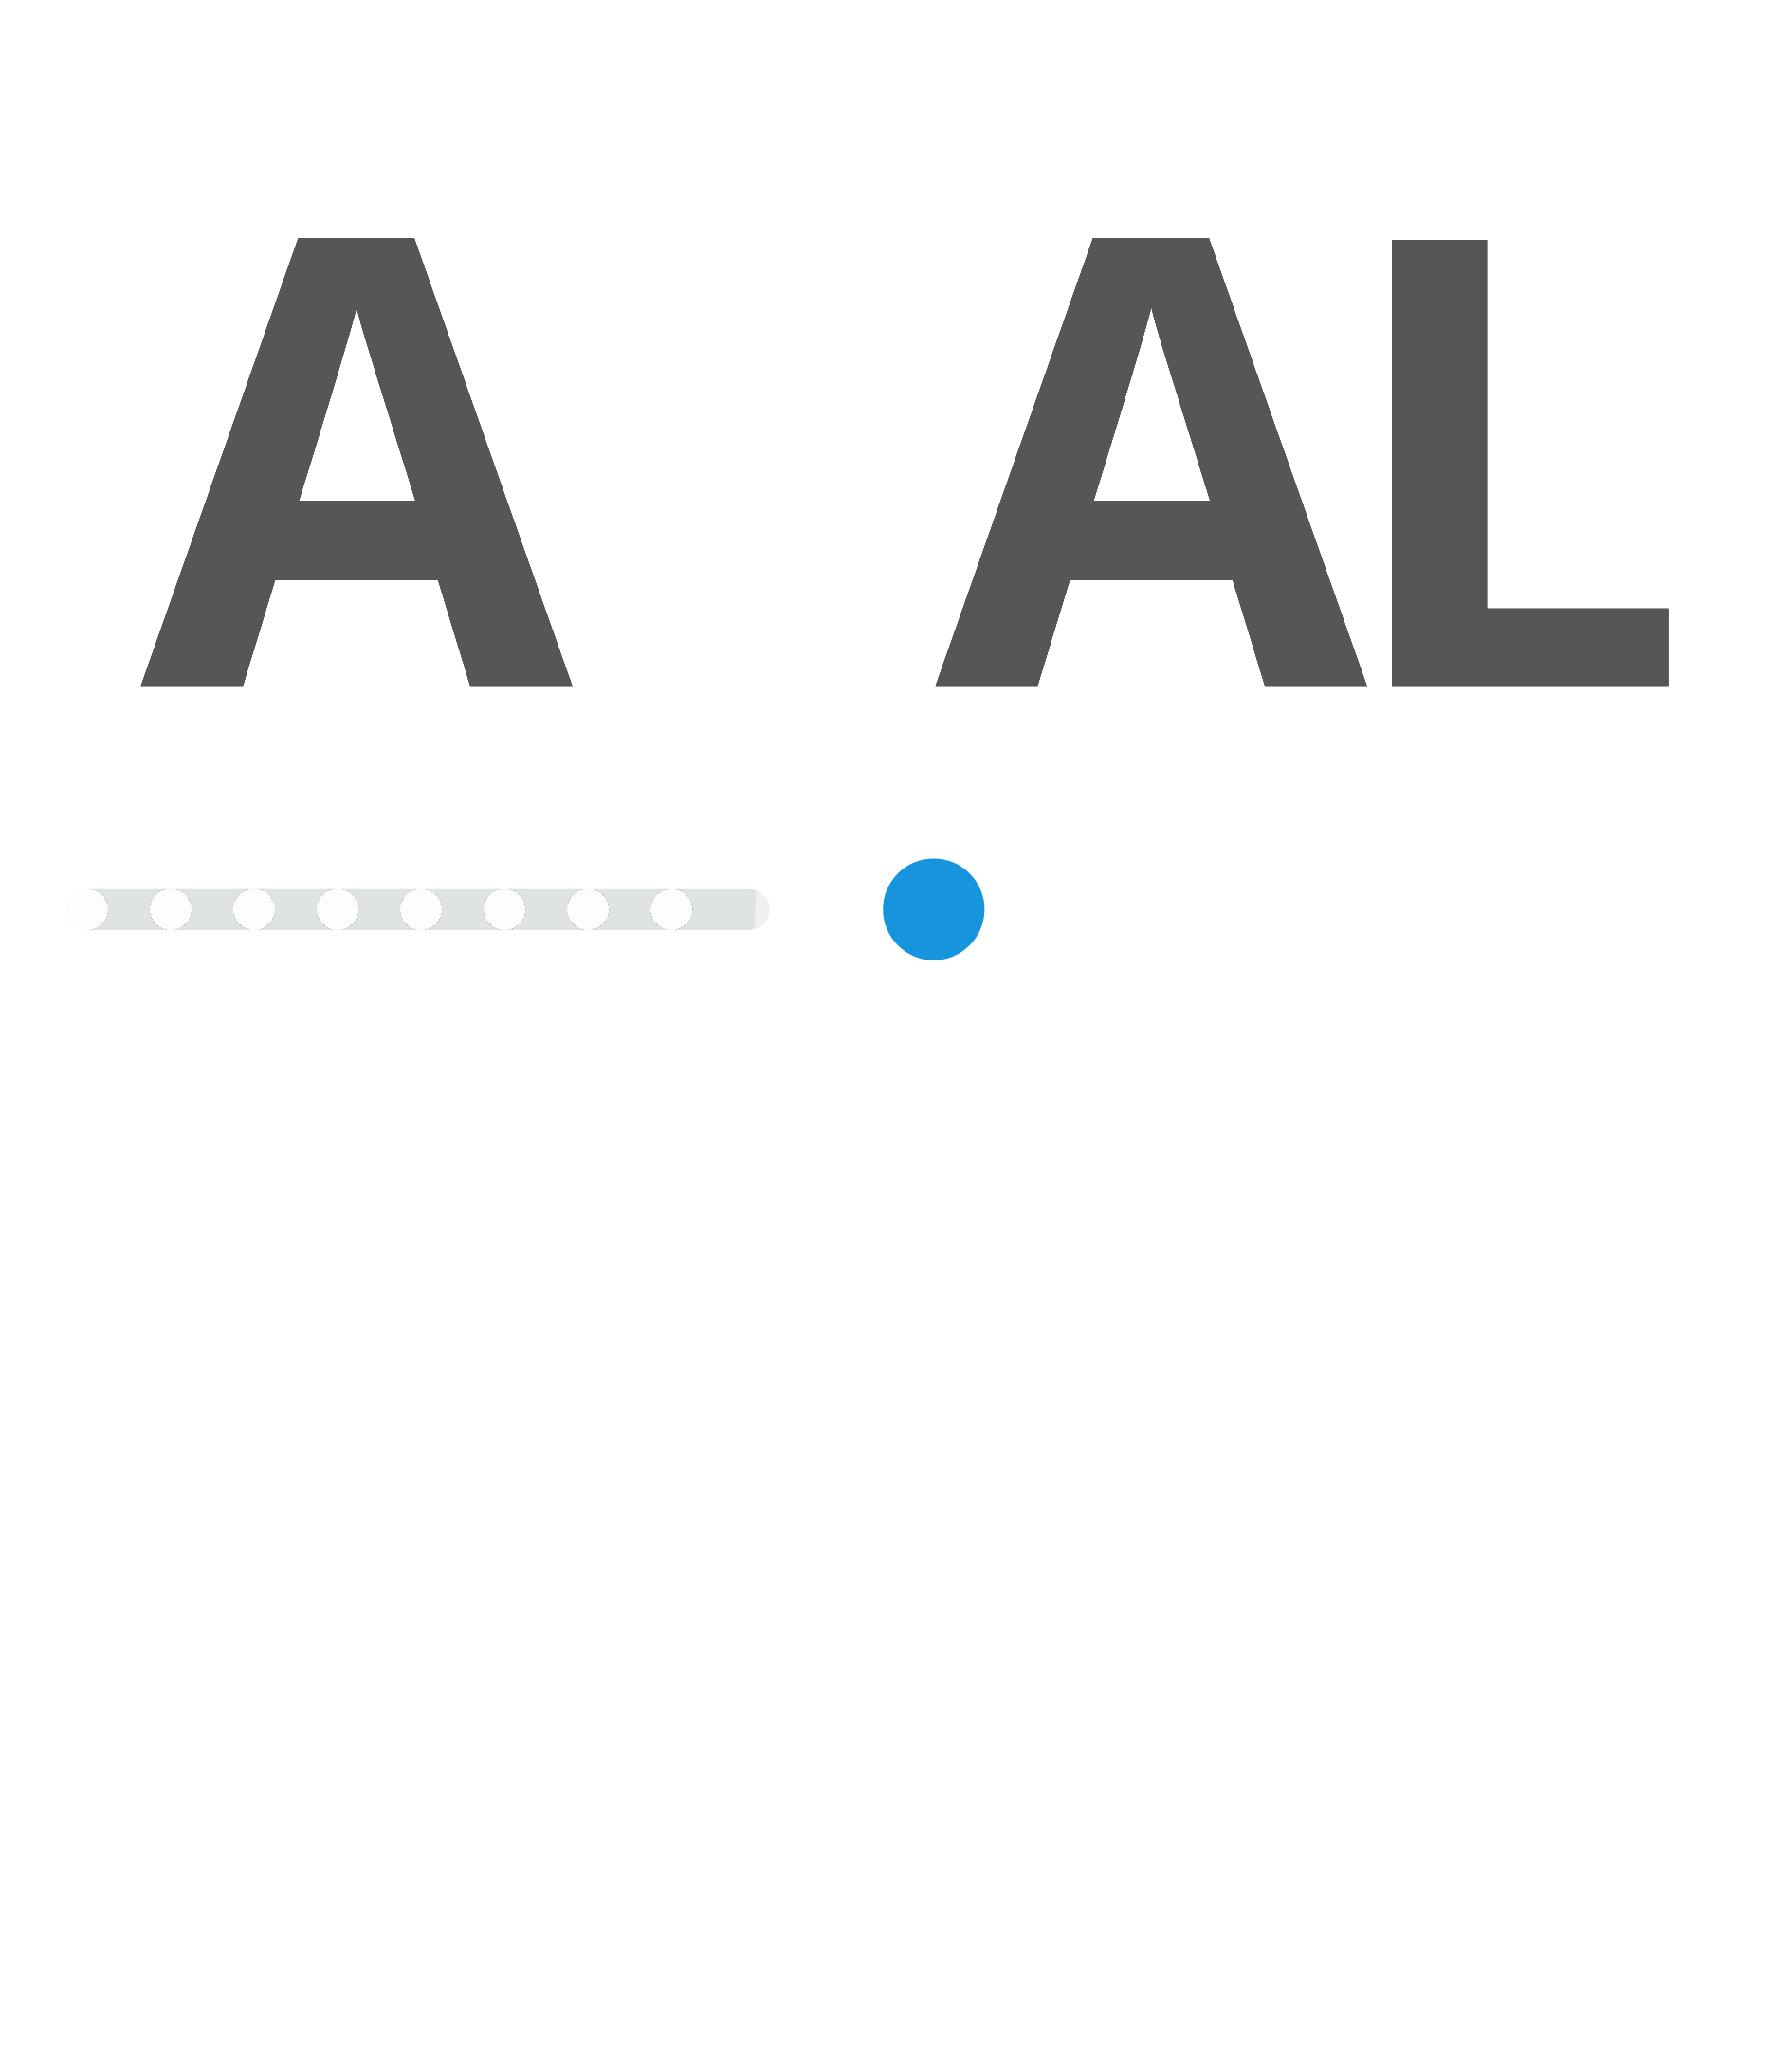 Acal-conectaSinfondo-negative